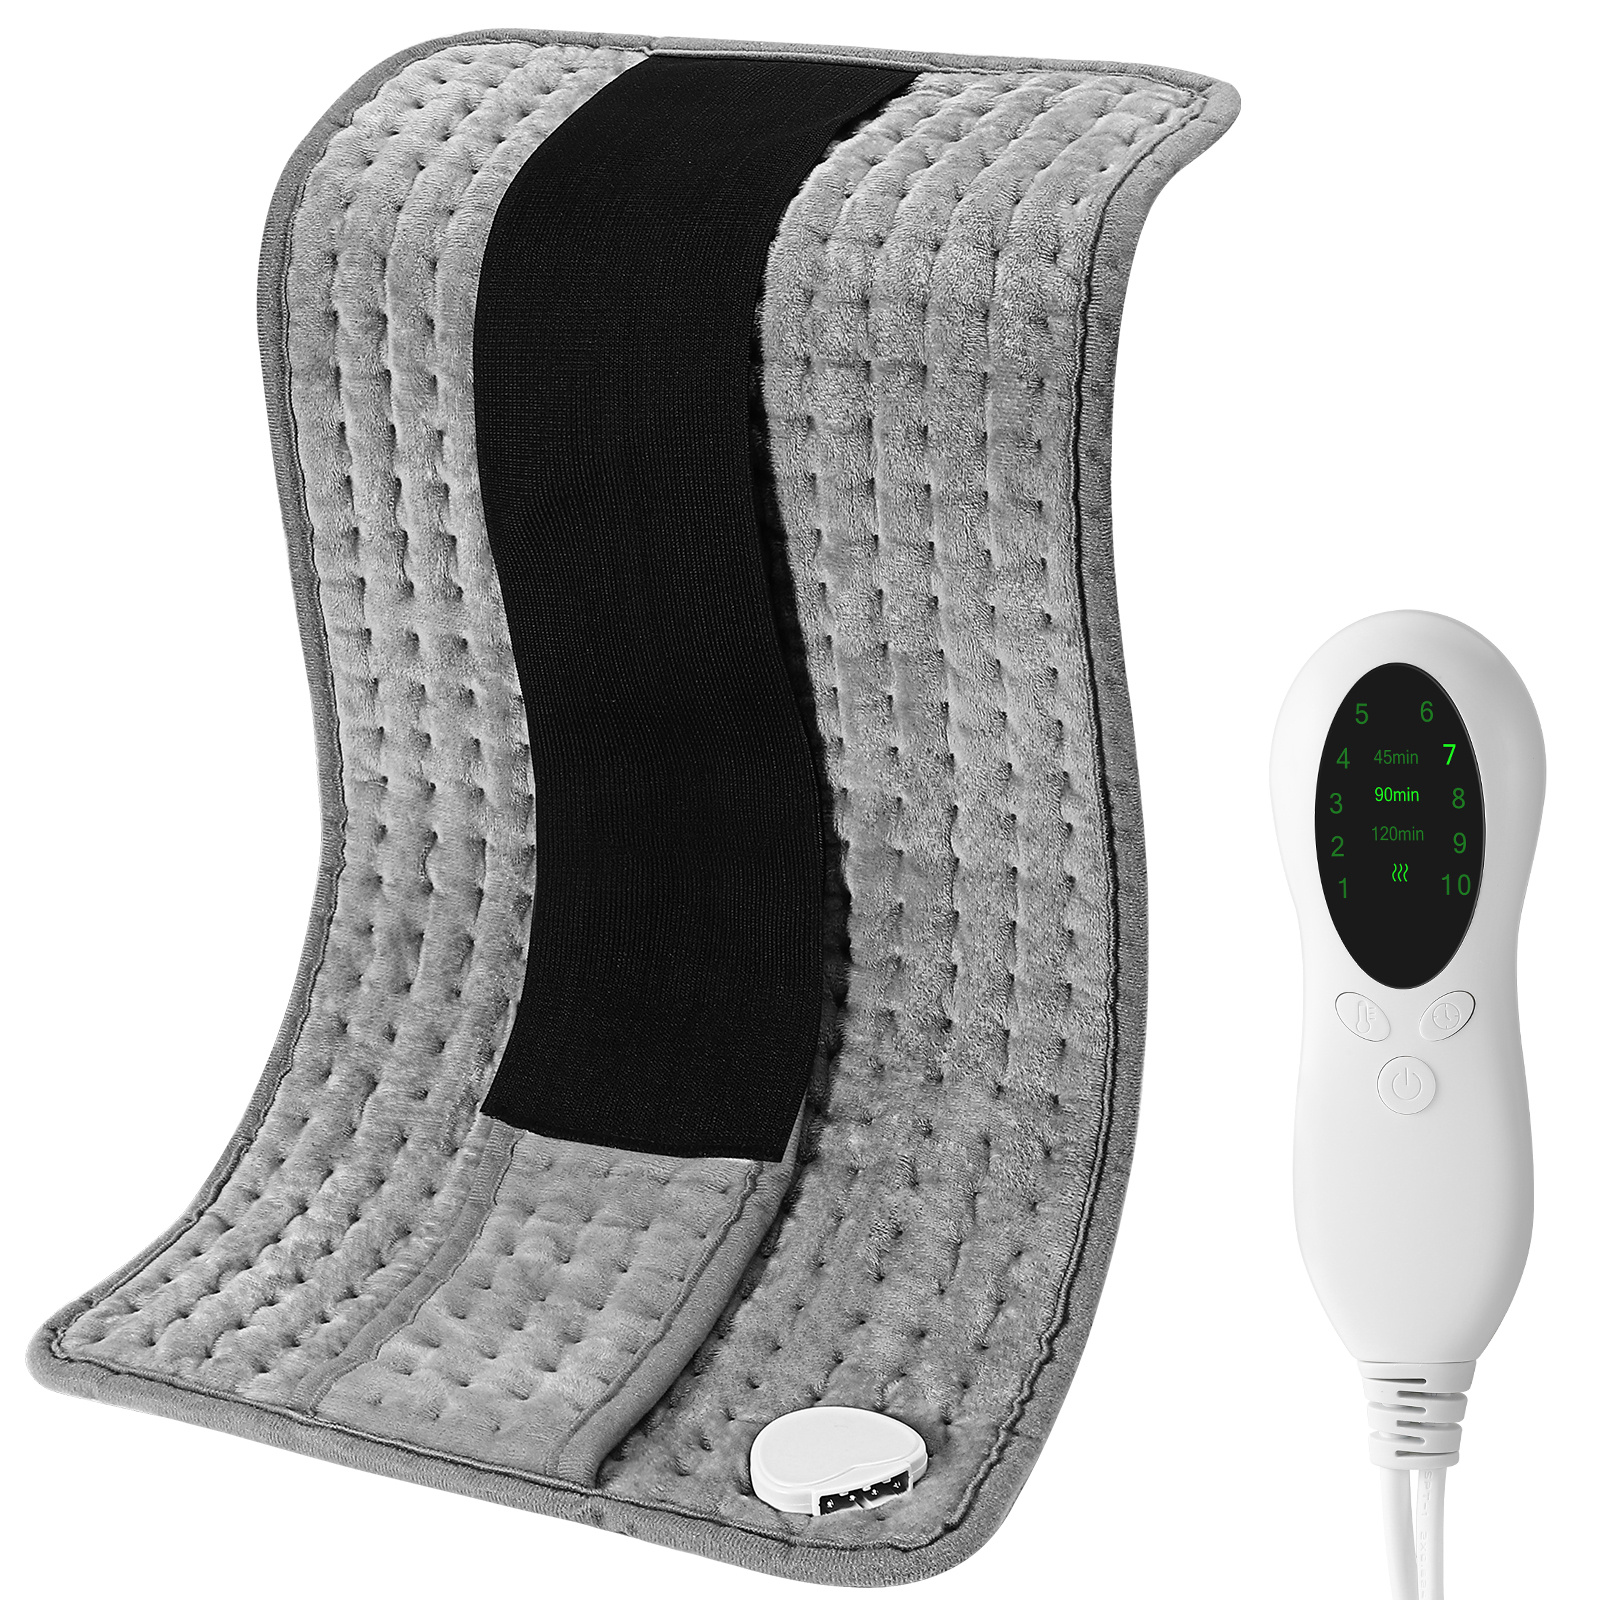 Almohadilla térmica eléctrica para aliviar el dolor de espalda y calambres,  almohadilla térmica eléctrica con 6 ajustes de calor, apagado automático